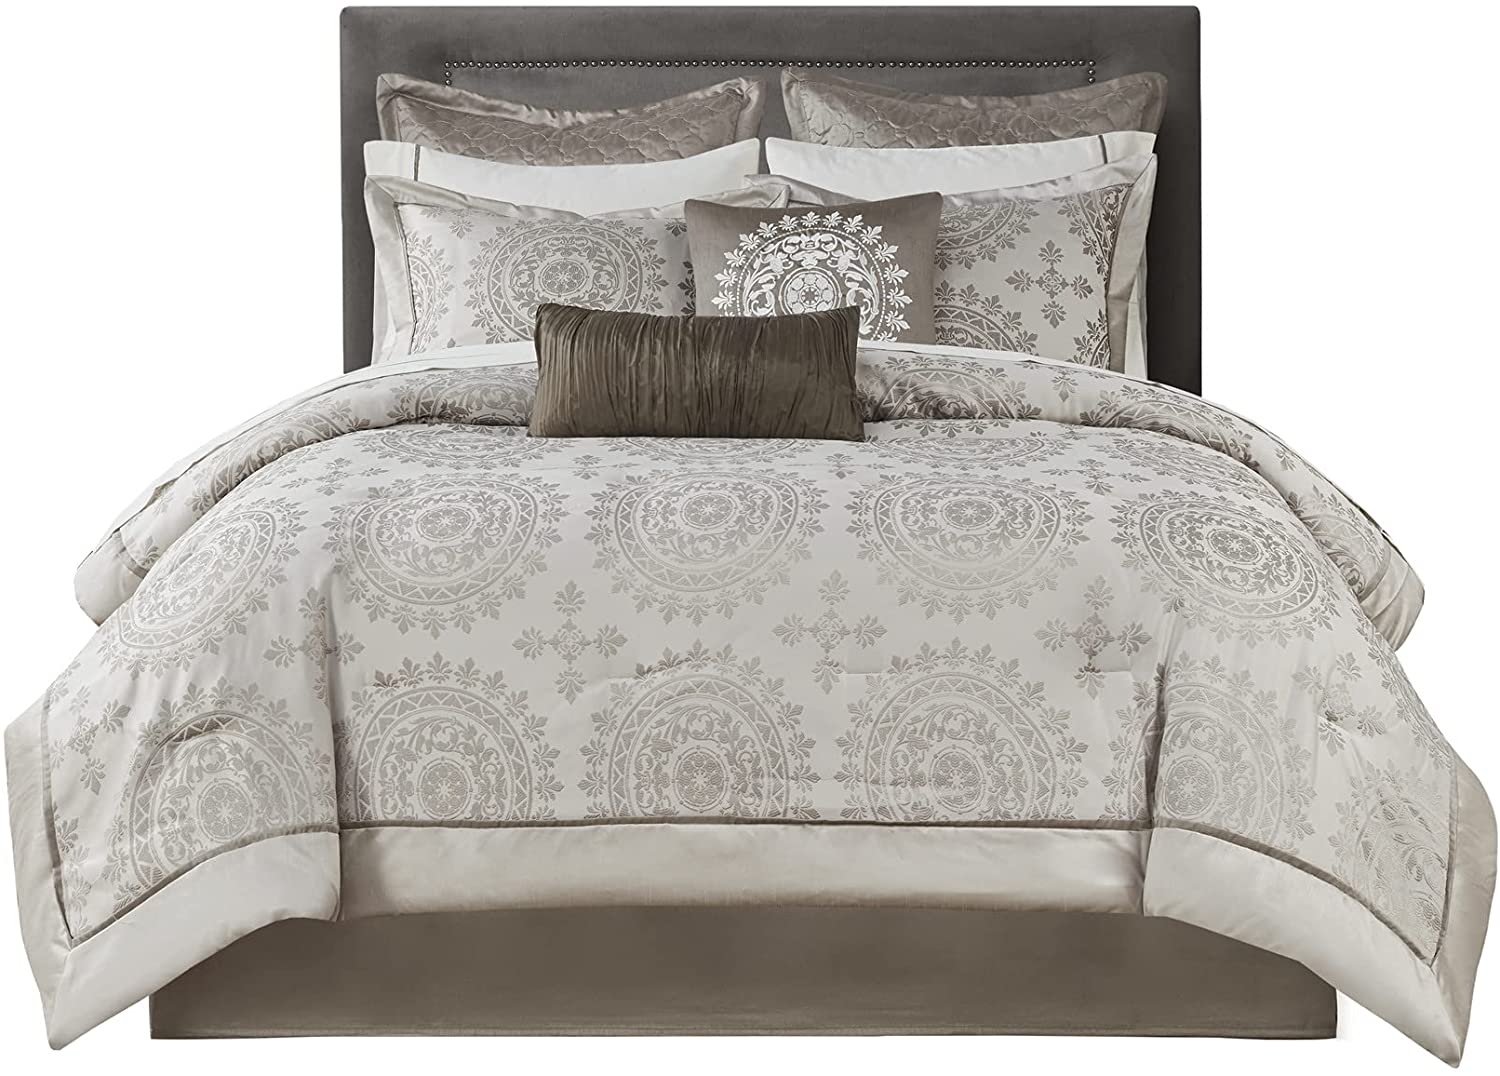 12 Piece Complete Bed Set1 Comforter:106x92 2 Dec Pillows:18x18/6.5x18 1 Fitted Sheet:78x80+14 1 Bedskirt:78x80+15 1 Flat Sheet:110x102 2 King Shams:20x36+2(2) 2 Euro Shams:26x26(2) 2 Pillowcases:20x40(2)TaupeMP10-119